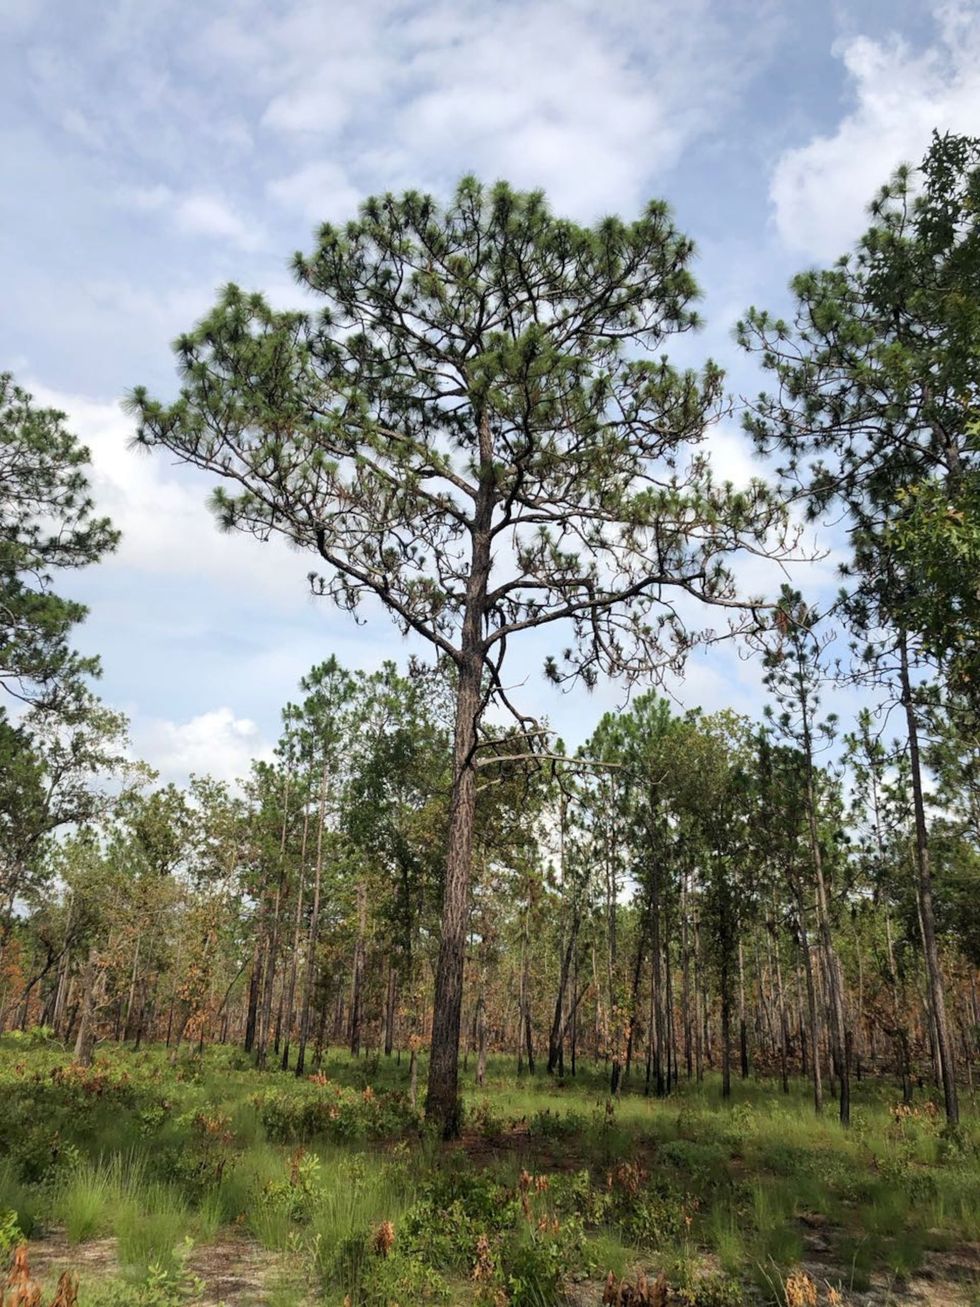 Een bos van moerasdennen Pinus palustris in Florida Moerasdennen behoorden tot de boomsoorten die in de negentiende eeuw veel werden gebruikt voor de bouw van de stad New York